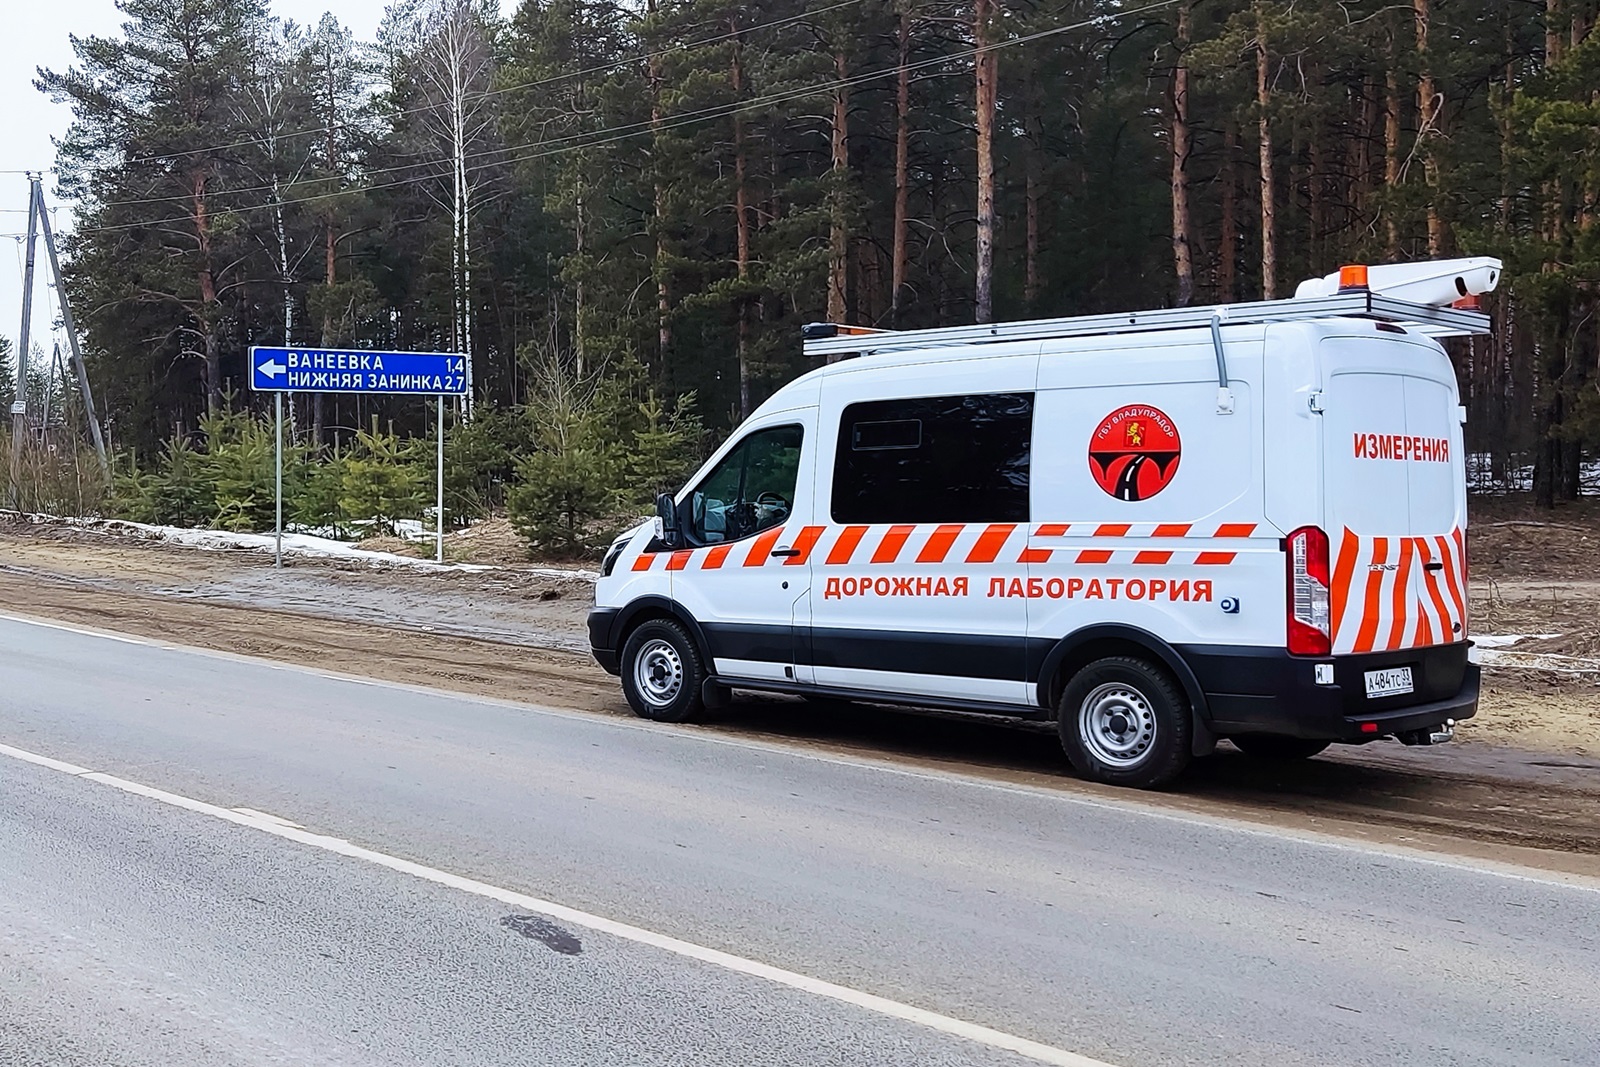 Во Владимирской области в этом году отремонтируют более 100 км дорог